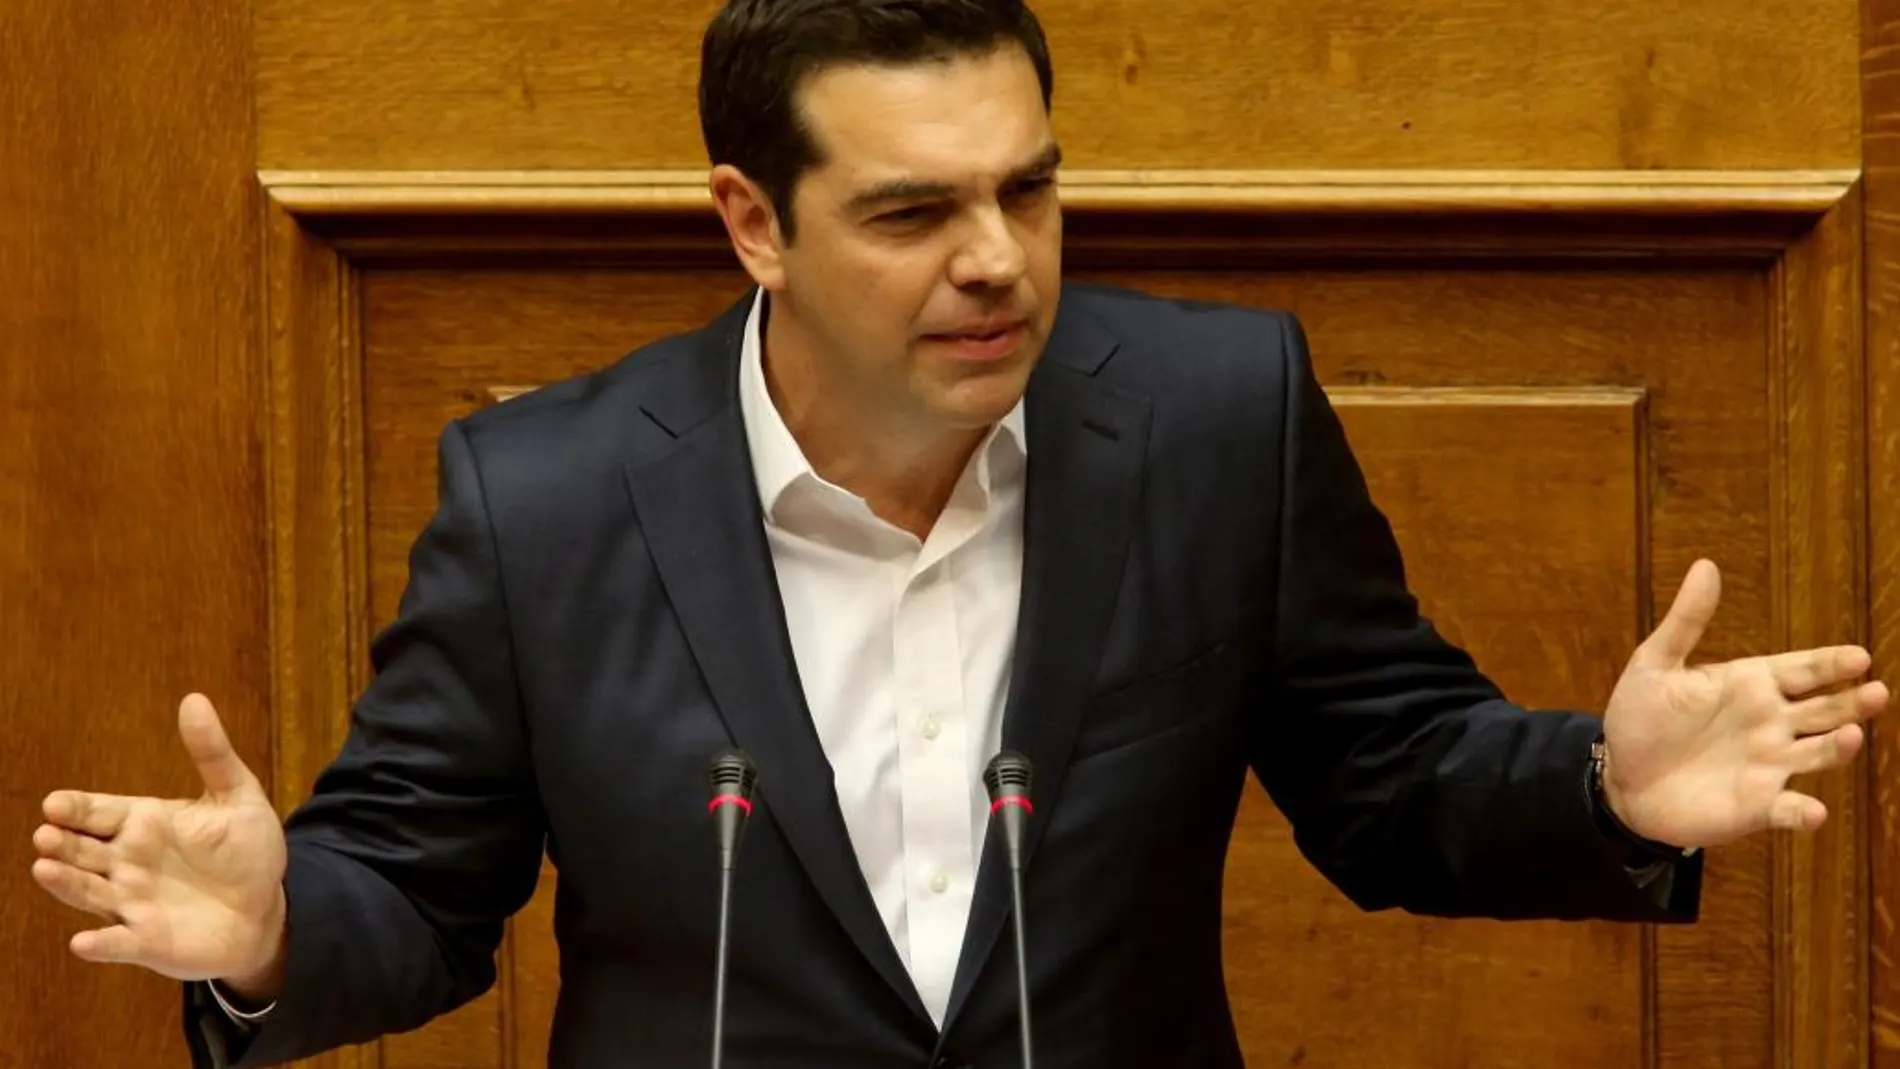 El primer ministro griego, Alexis Tsipras, durante su intervención ante el Parlamento griego